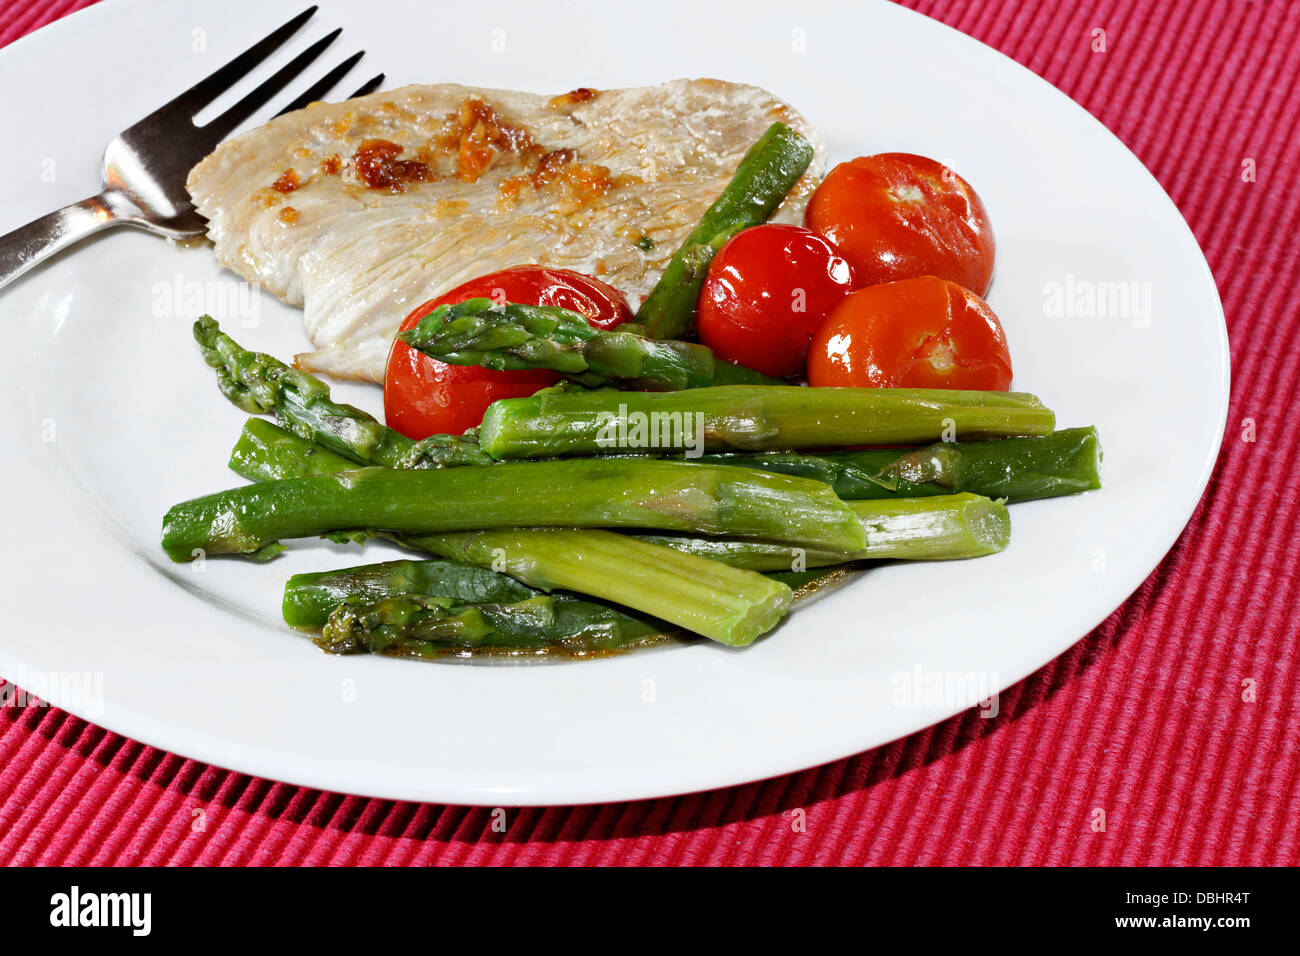 Turquía Steak, espárragos verdes y tomates en la placa blanca. Foto de stock